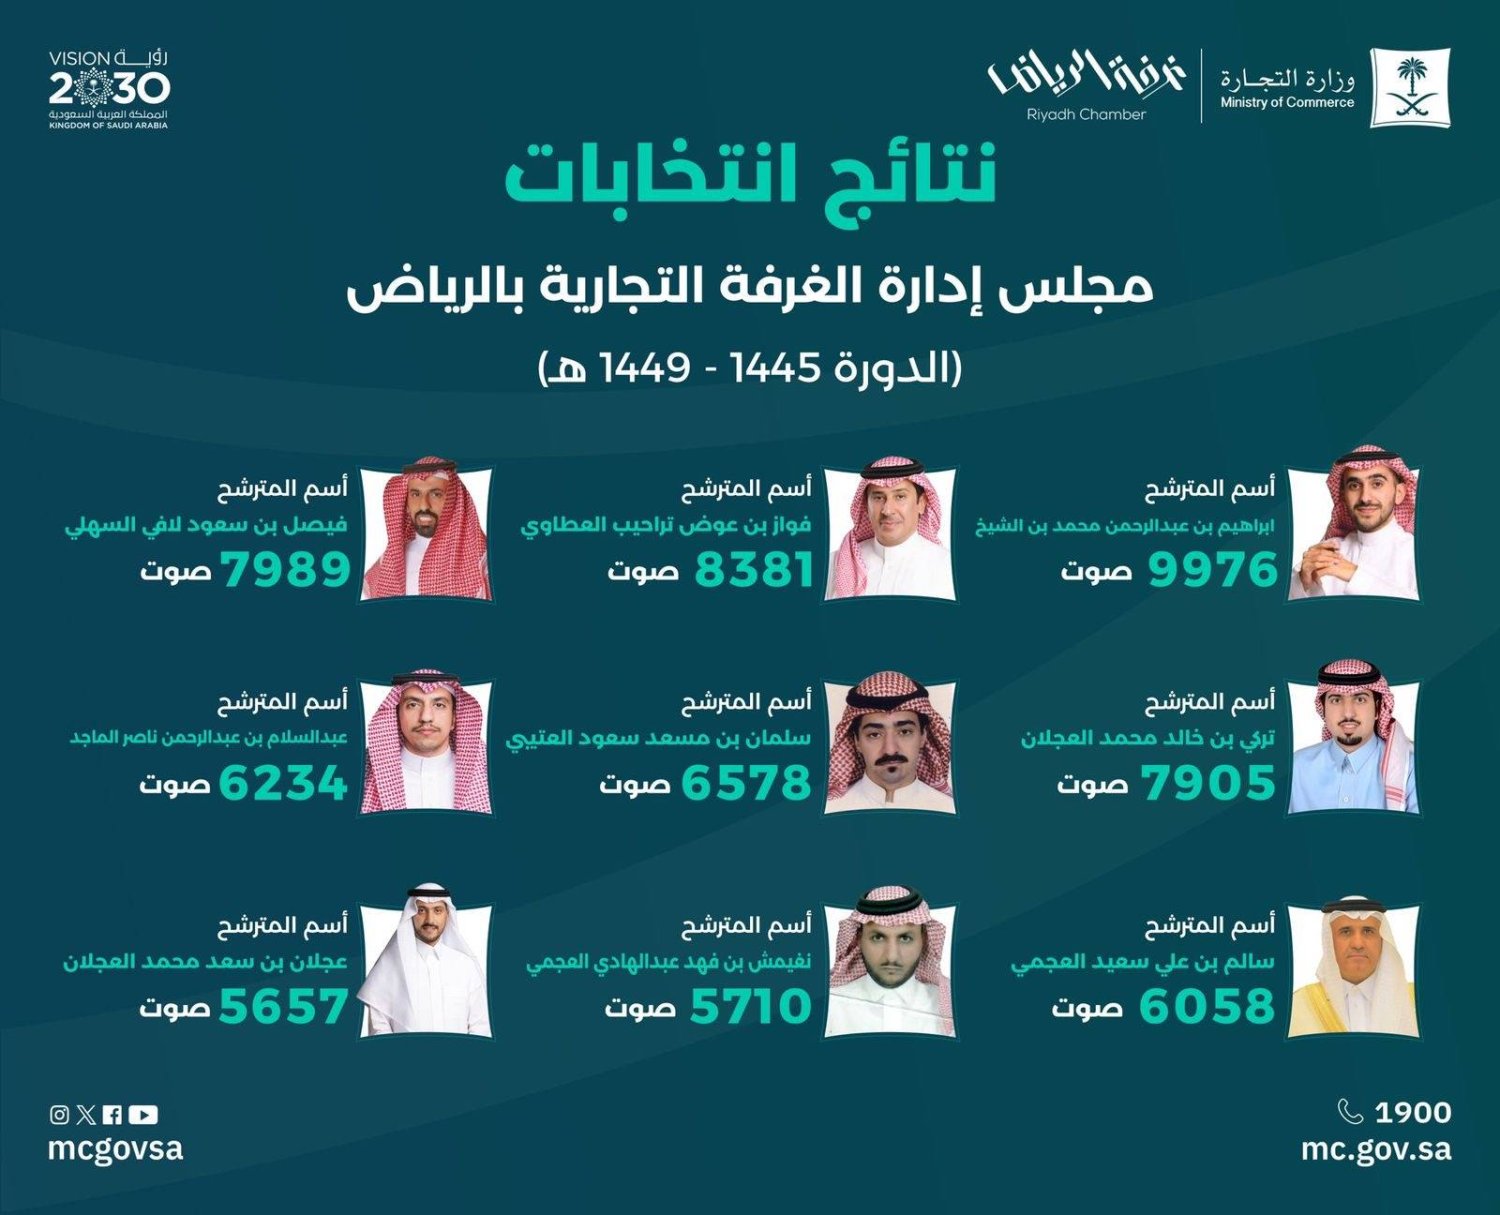 قائمة الفائزين في الدورة الجديدة لانتخابات غرفة الرياض (غرفة الرياض)